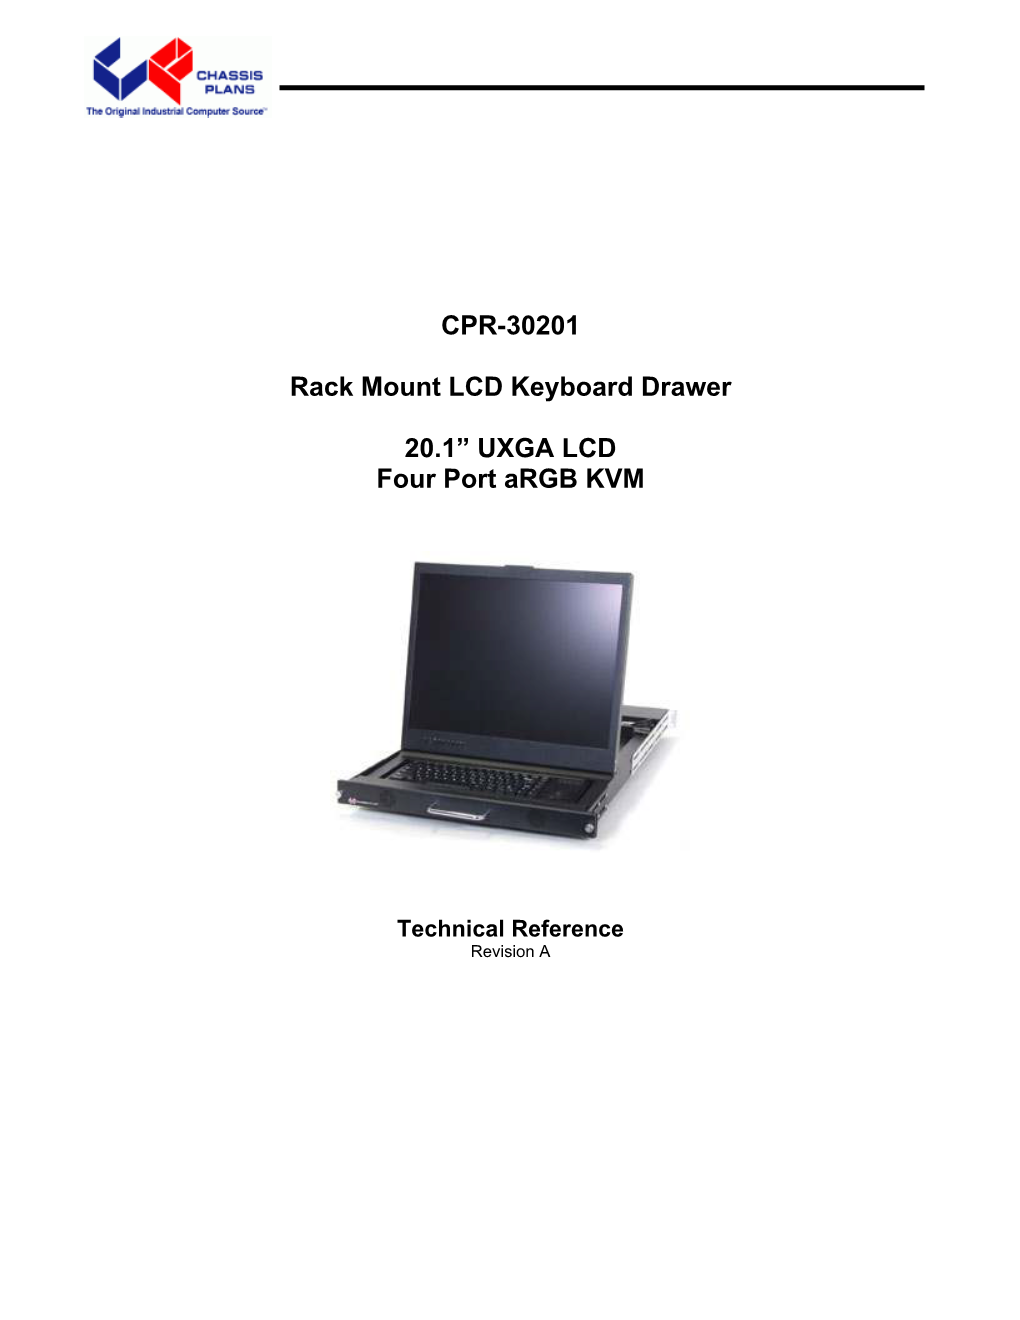 CPR-30201 Rack Mount LCD Keyboard Drawer 20.1” UXGA LCD